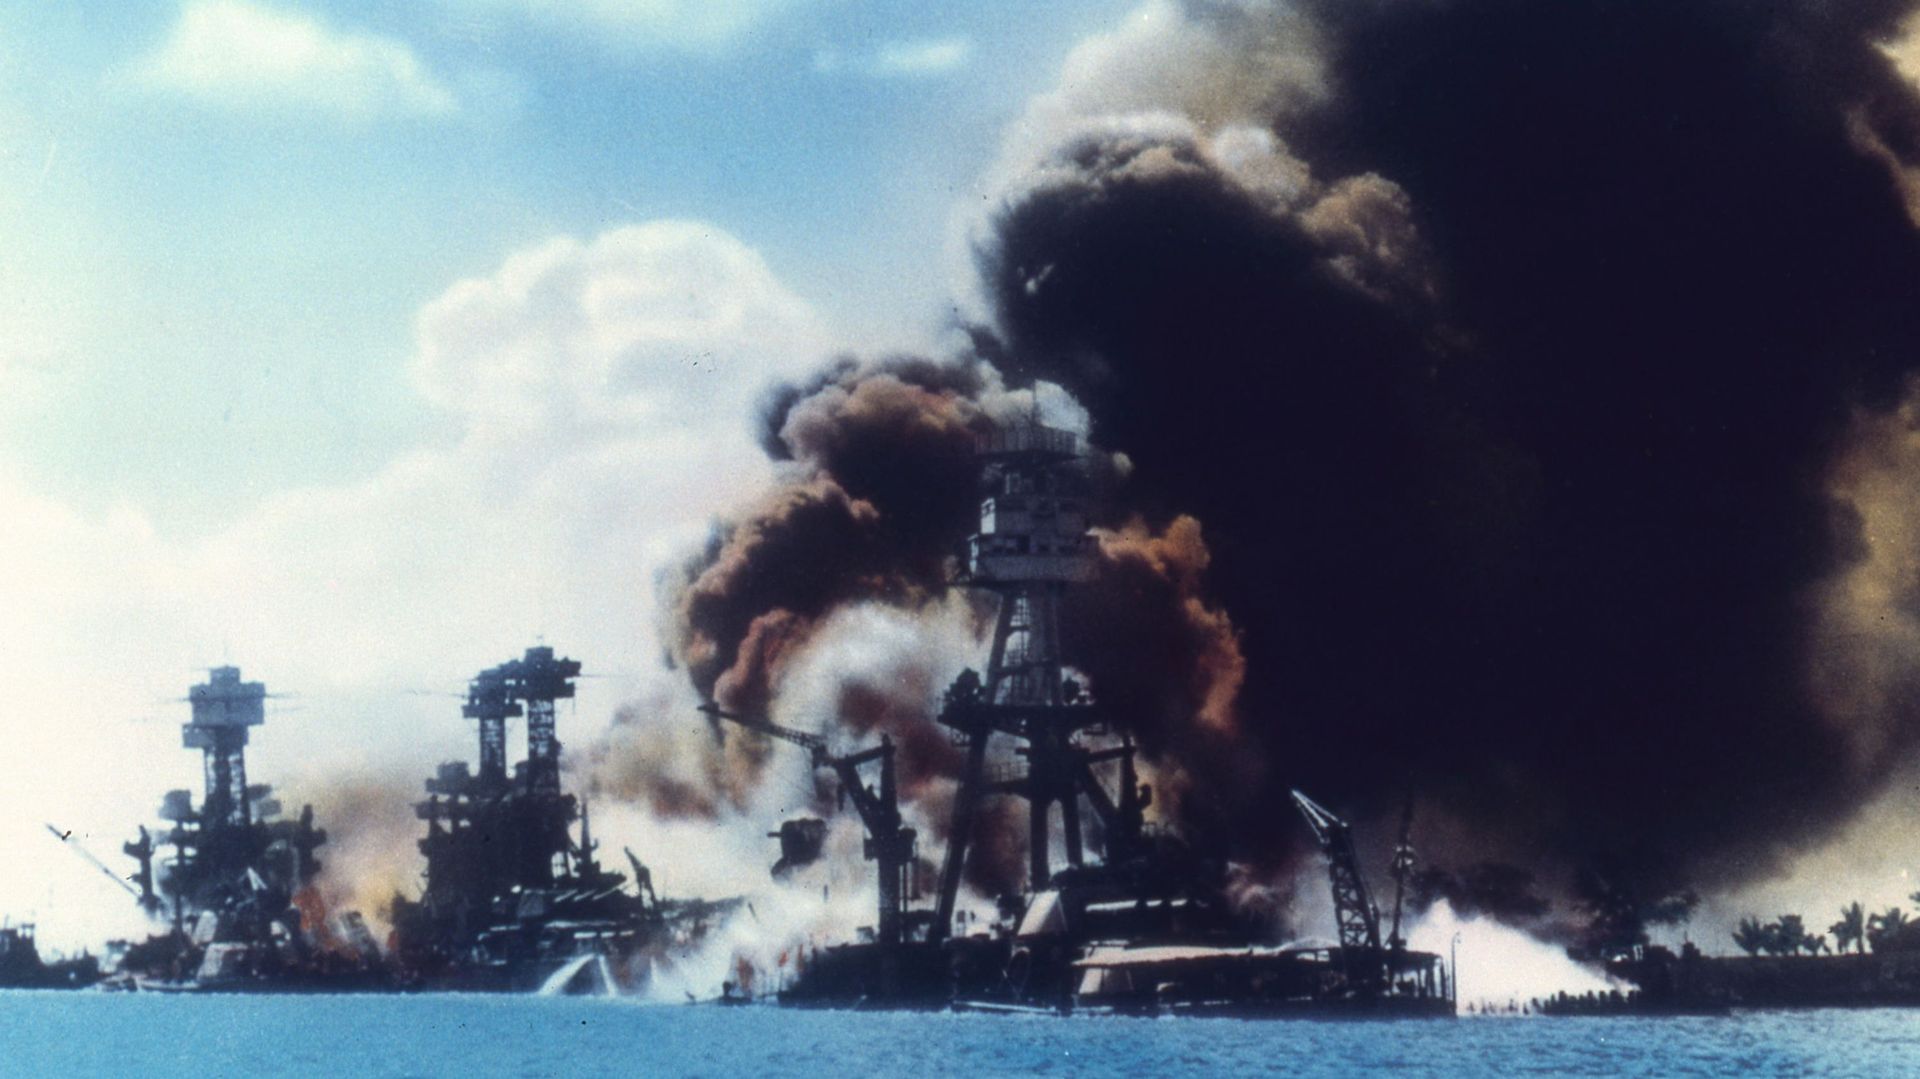 Vue de la rangée de cuirassés alors que des explosions endommagent trois cuirassés américains pendant l'attaque japonaise sur Pearl Harbor, à Honolulu, Oahu, Hawaii, le 7 décembre 1941.